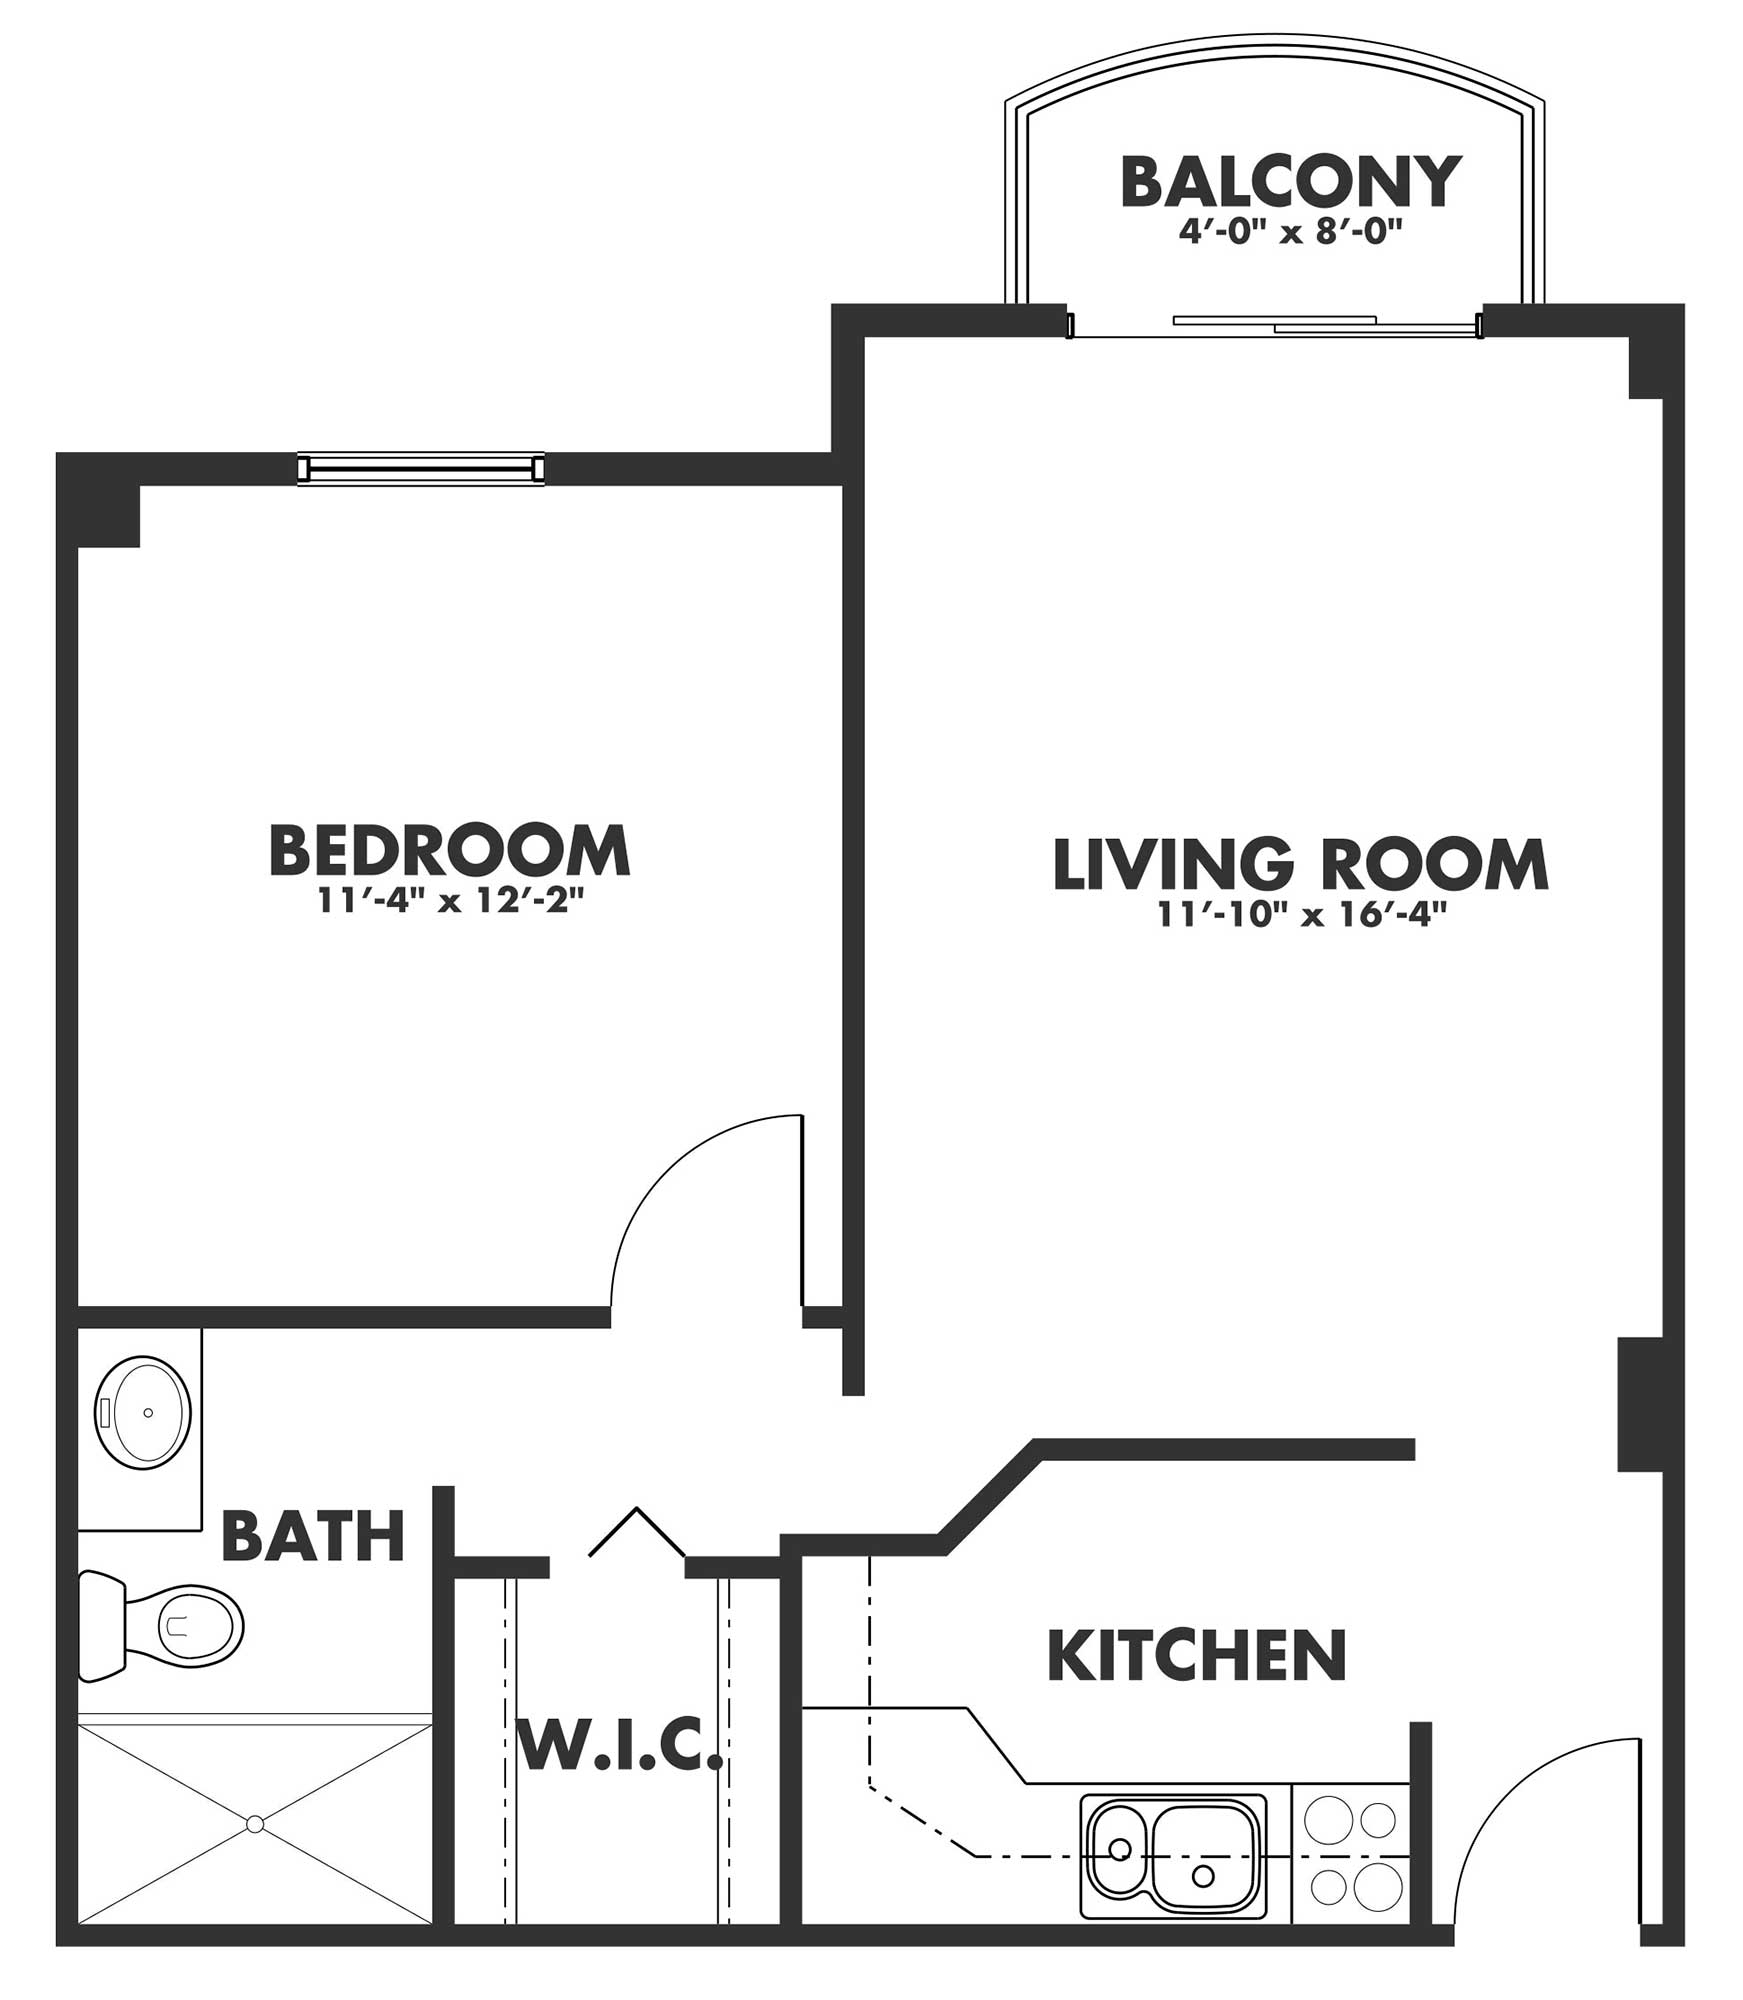 The one bedroom cartwright floor plan.